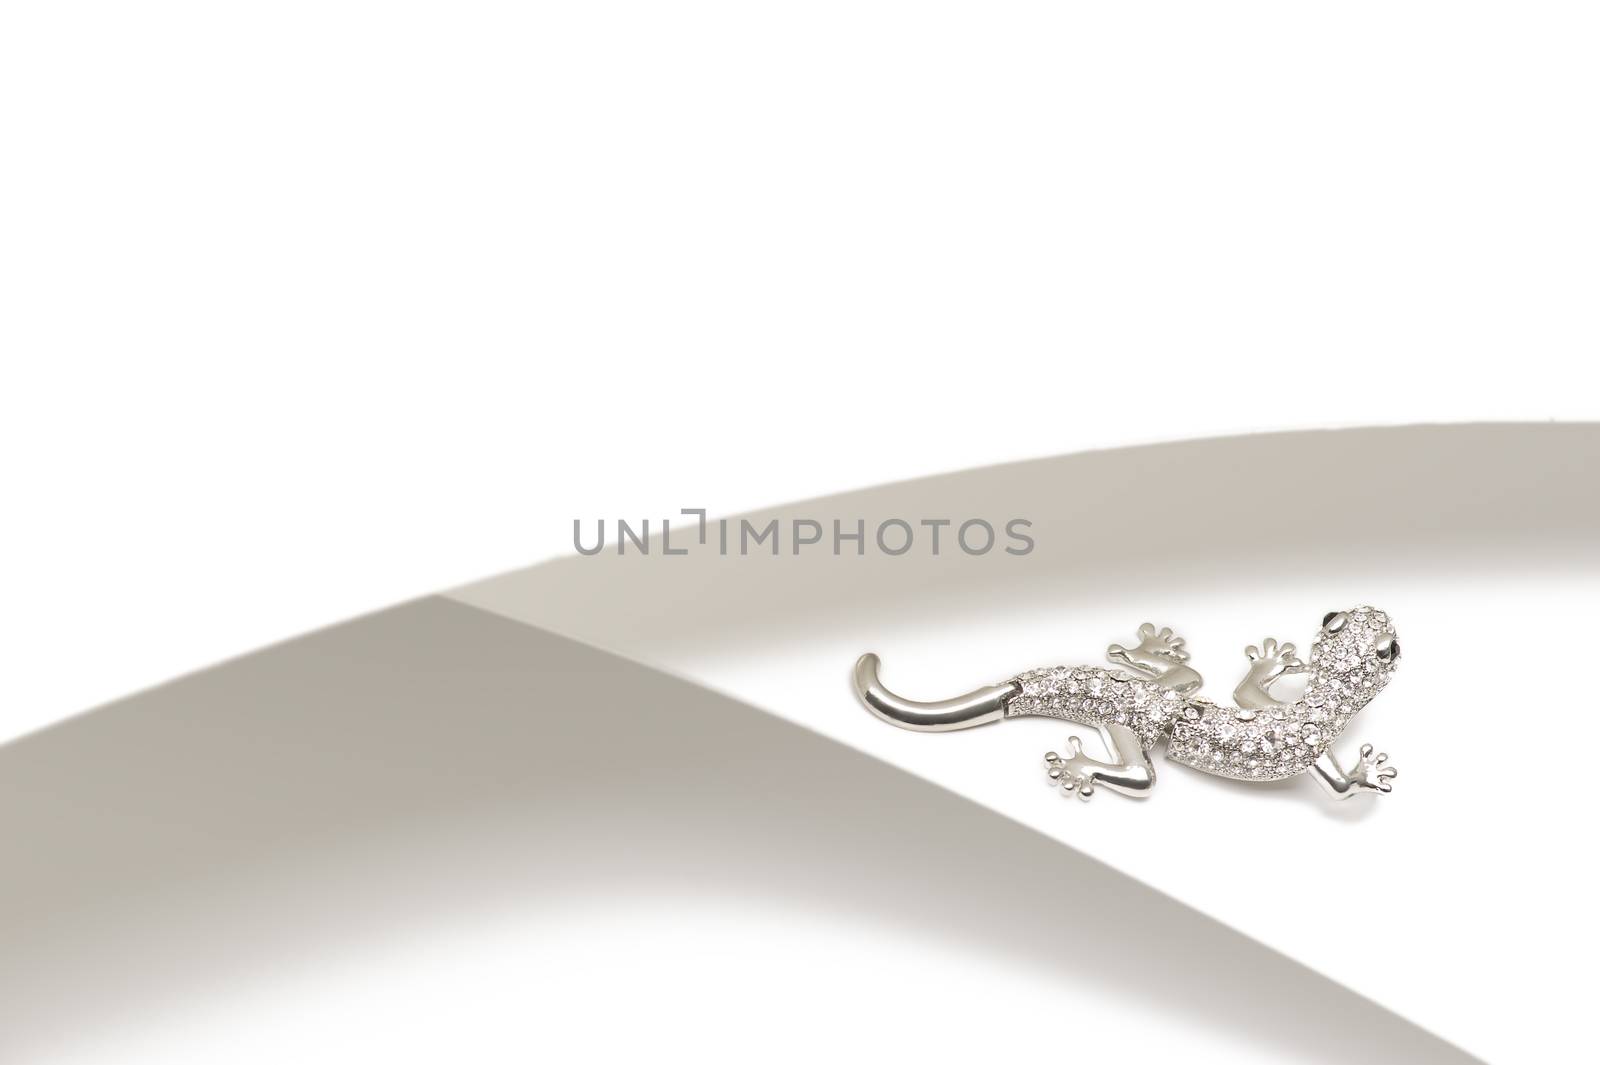 Silver gemstone lizard brooch by MOELLERTHOMSEN